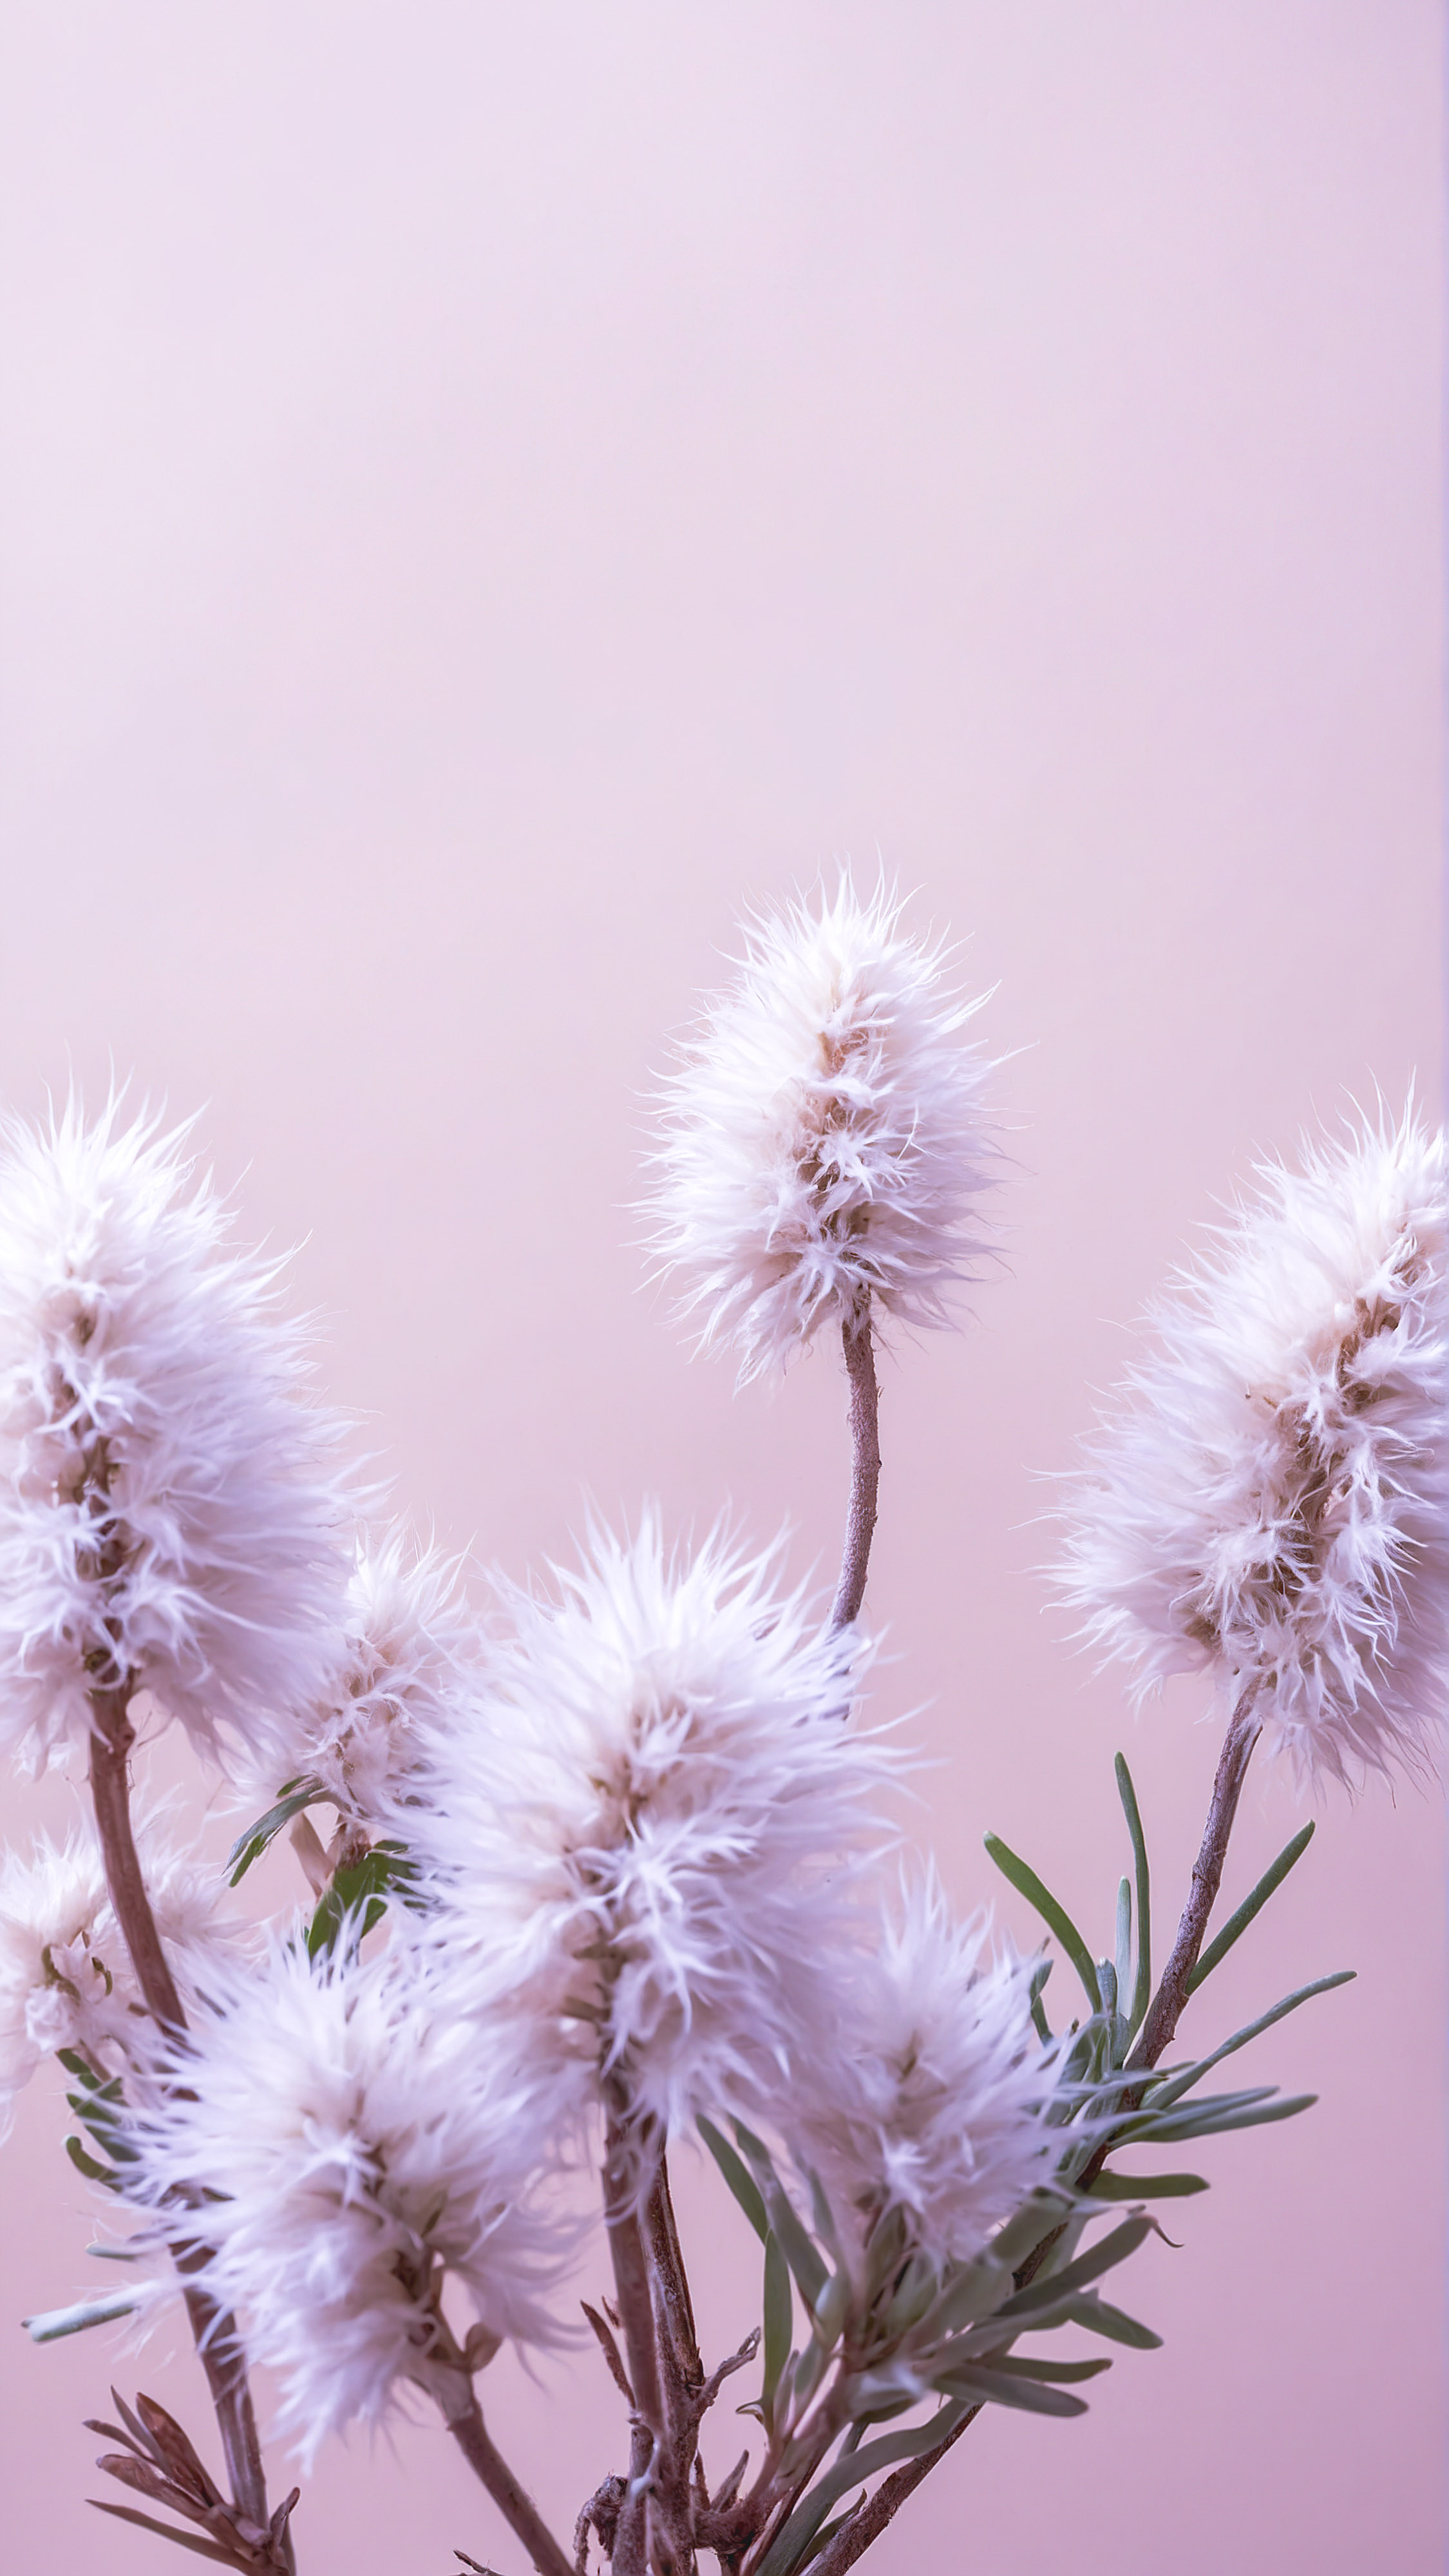 Apportez la beauté de la nature à votre écran avec notre beau fond d'écran HD mignon pour iPhone, affichant des plantes duveteuses de couleur claire contre un arrière-plan beige doux qui respire la tranquillité.